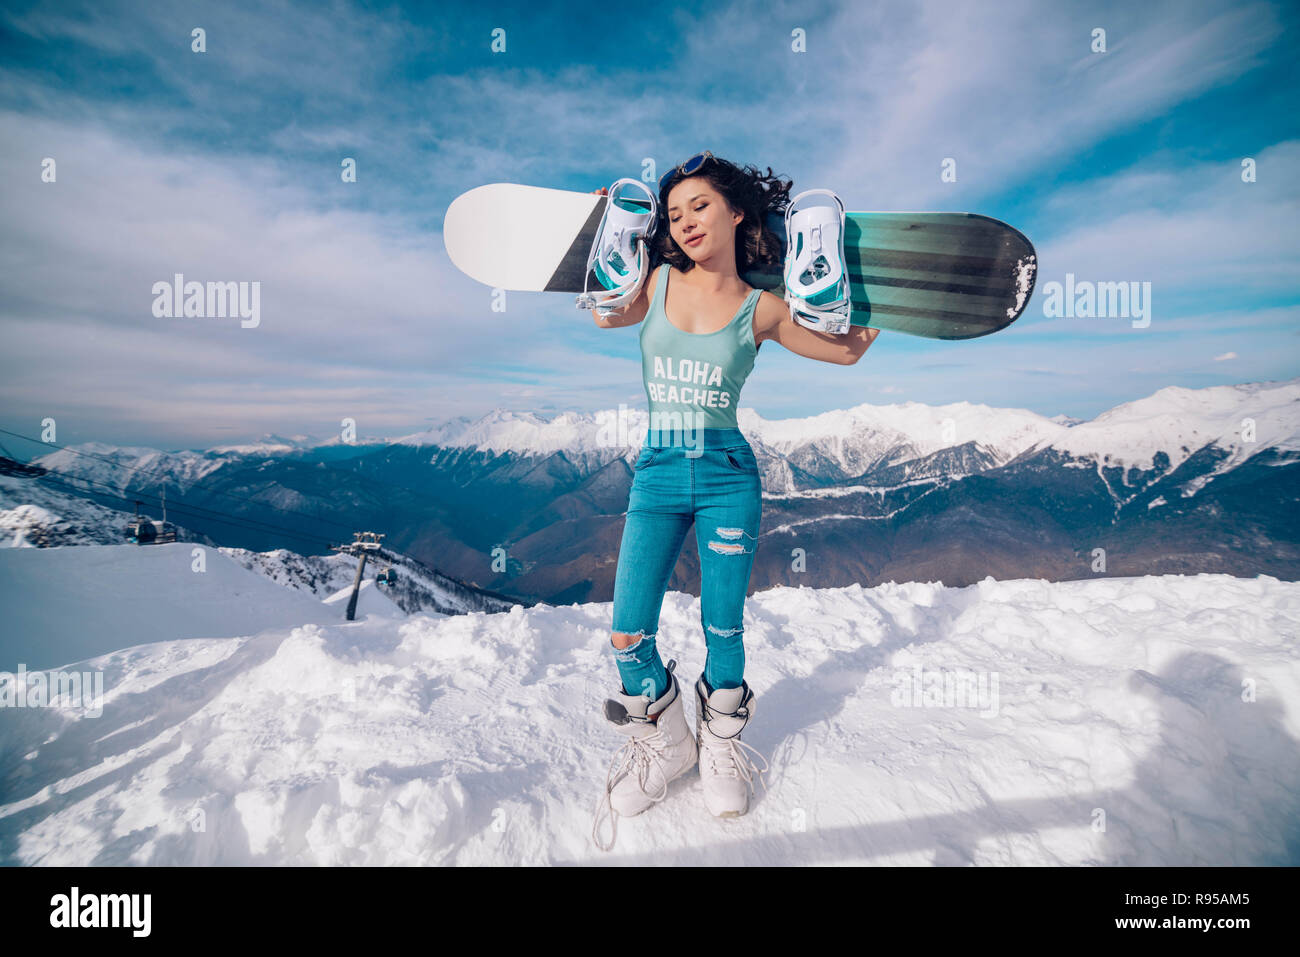 Mujer con snowboard foto de archivo. Imagen de ocio - 232875598